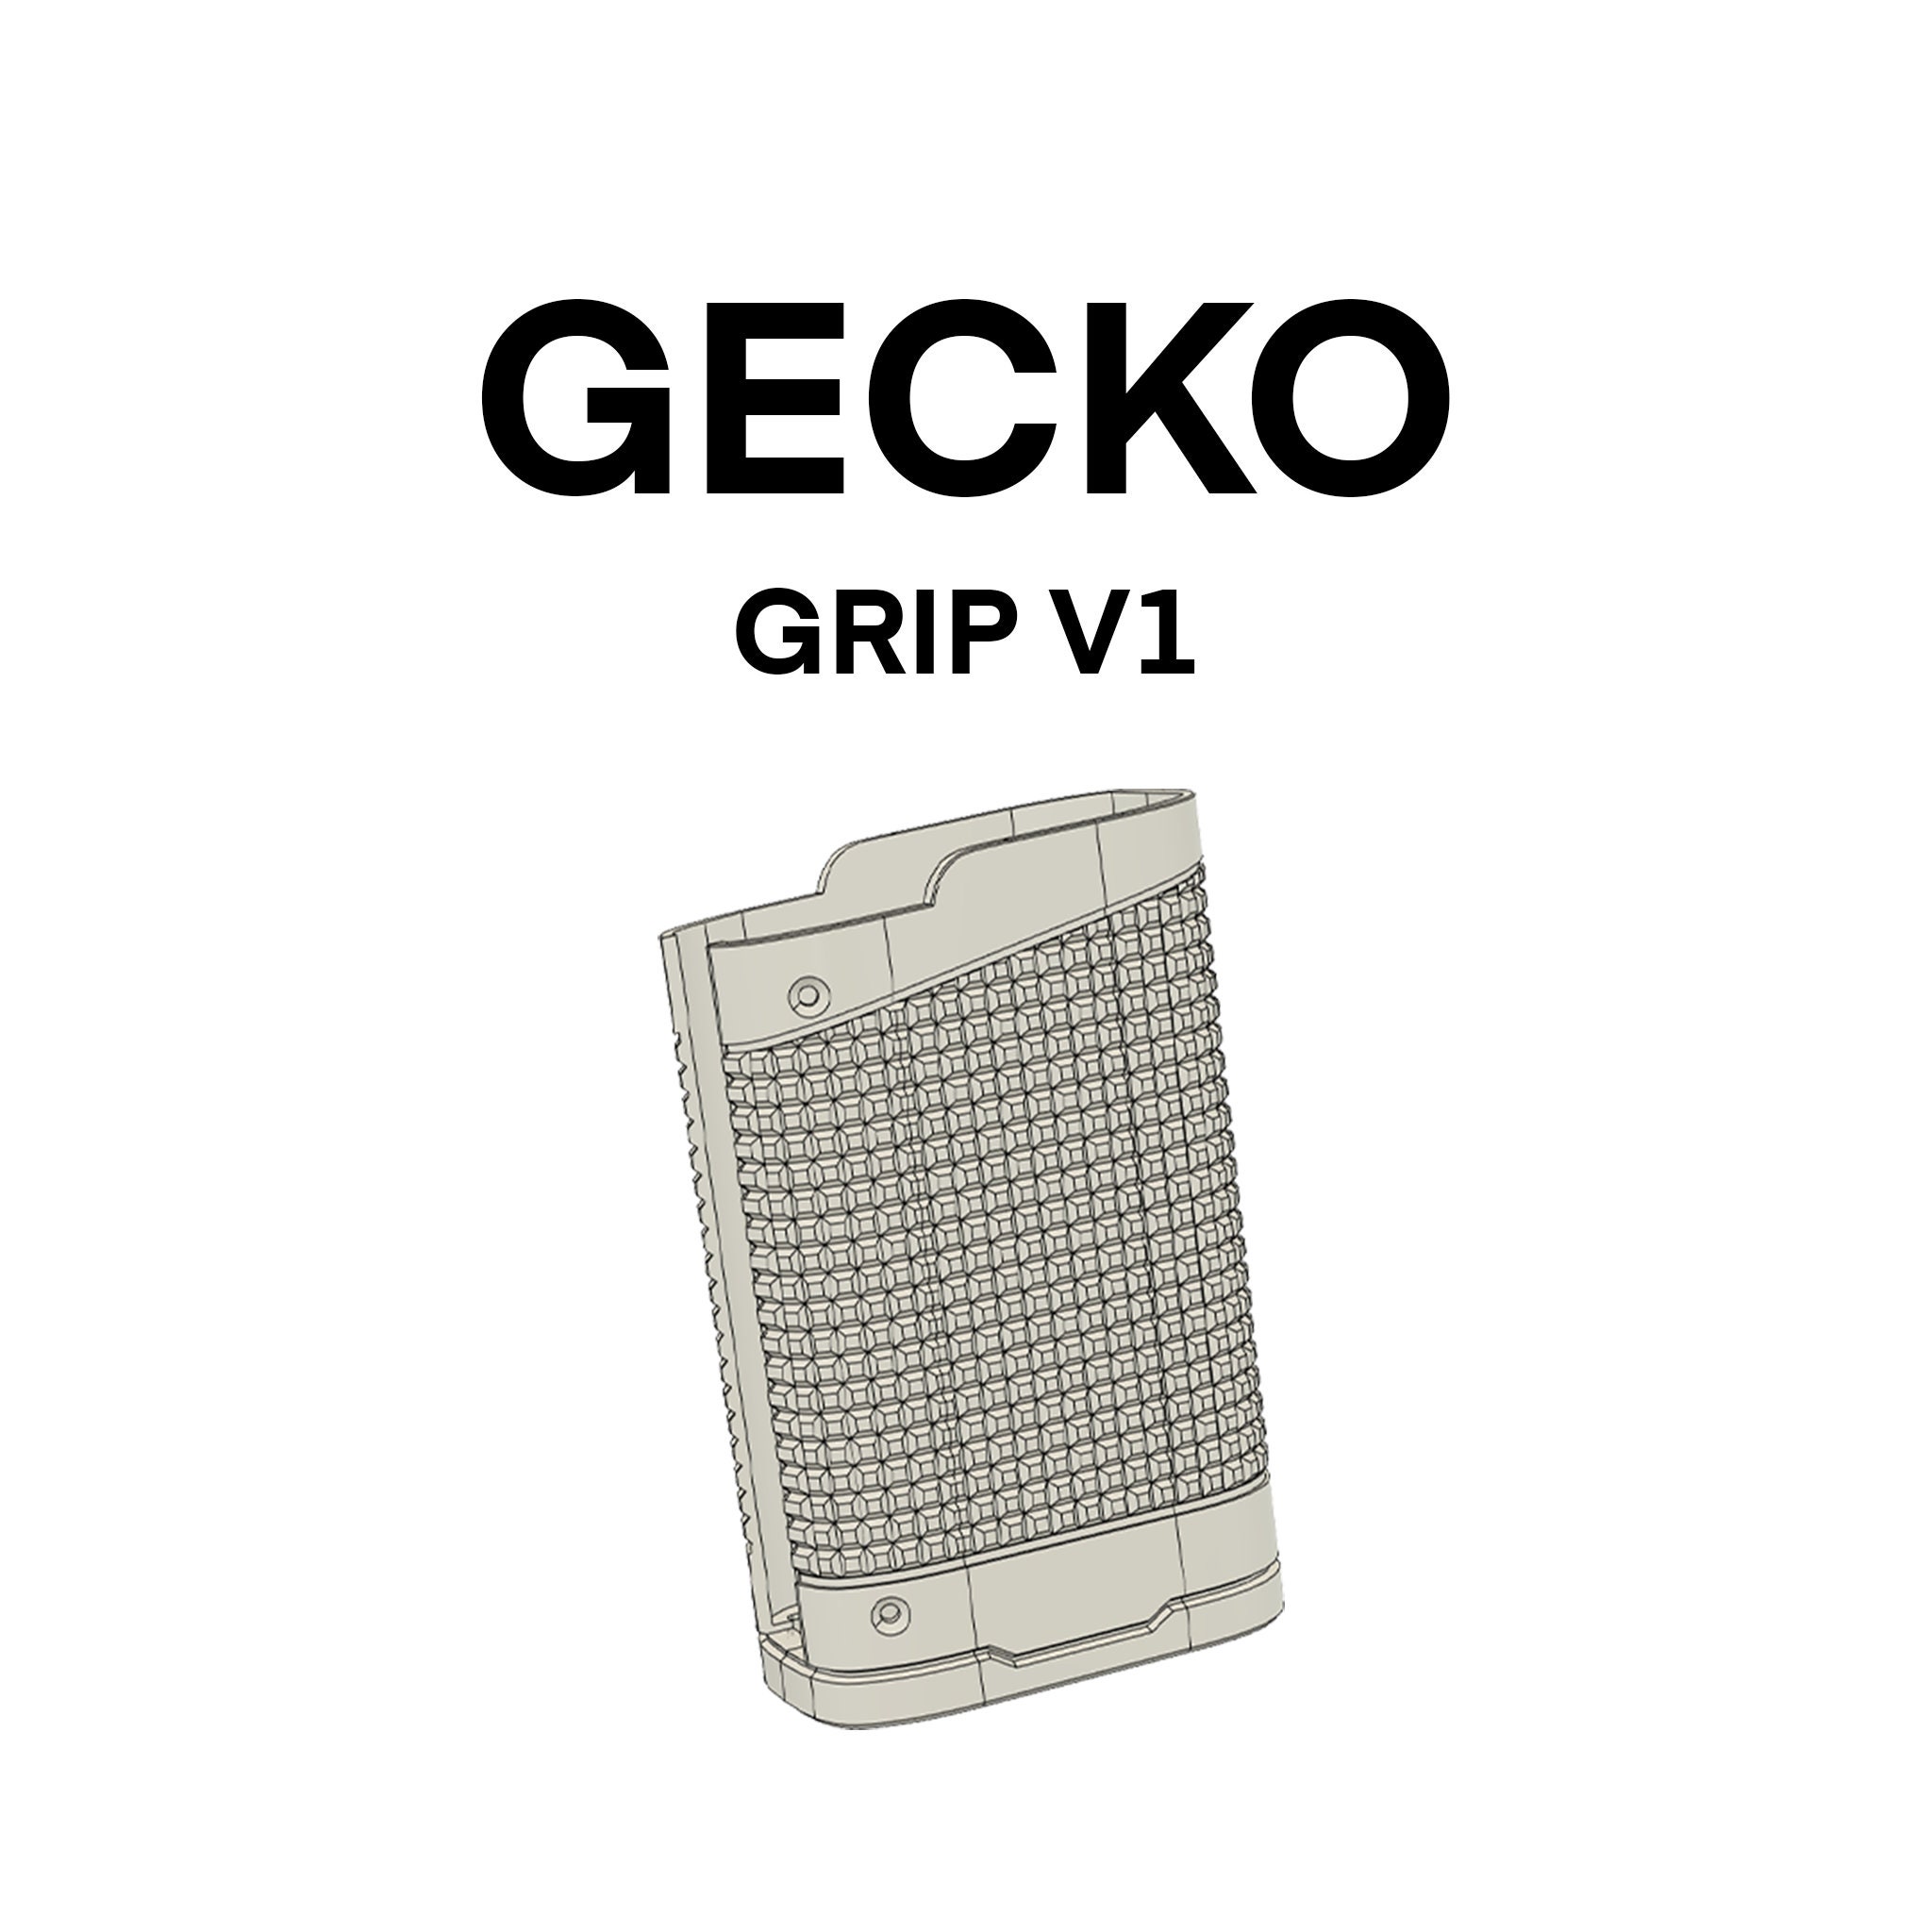 Gecko Grip V1 